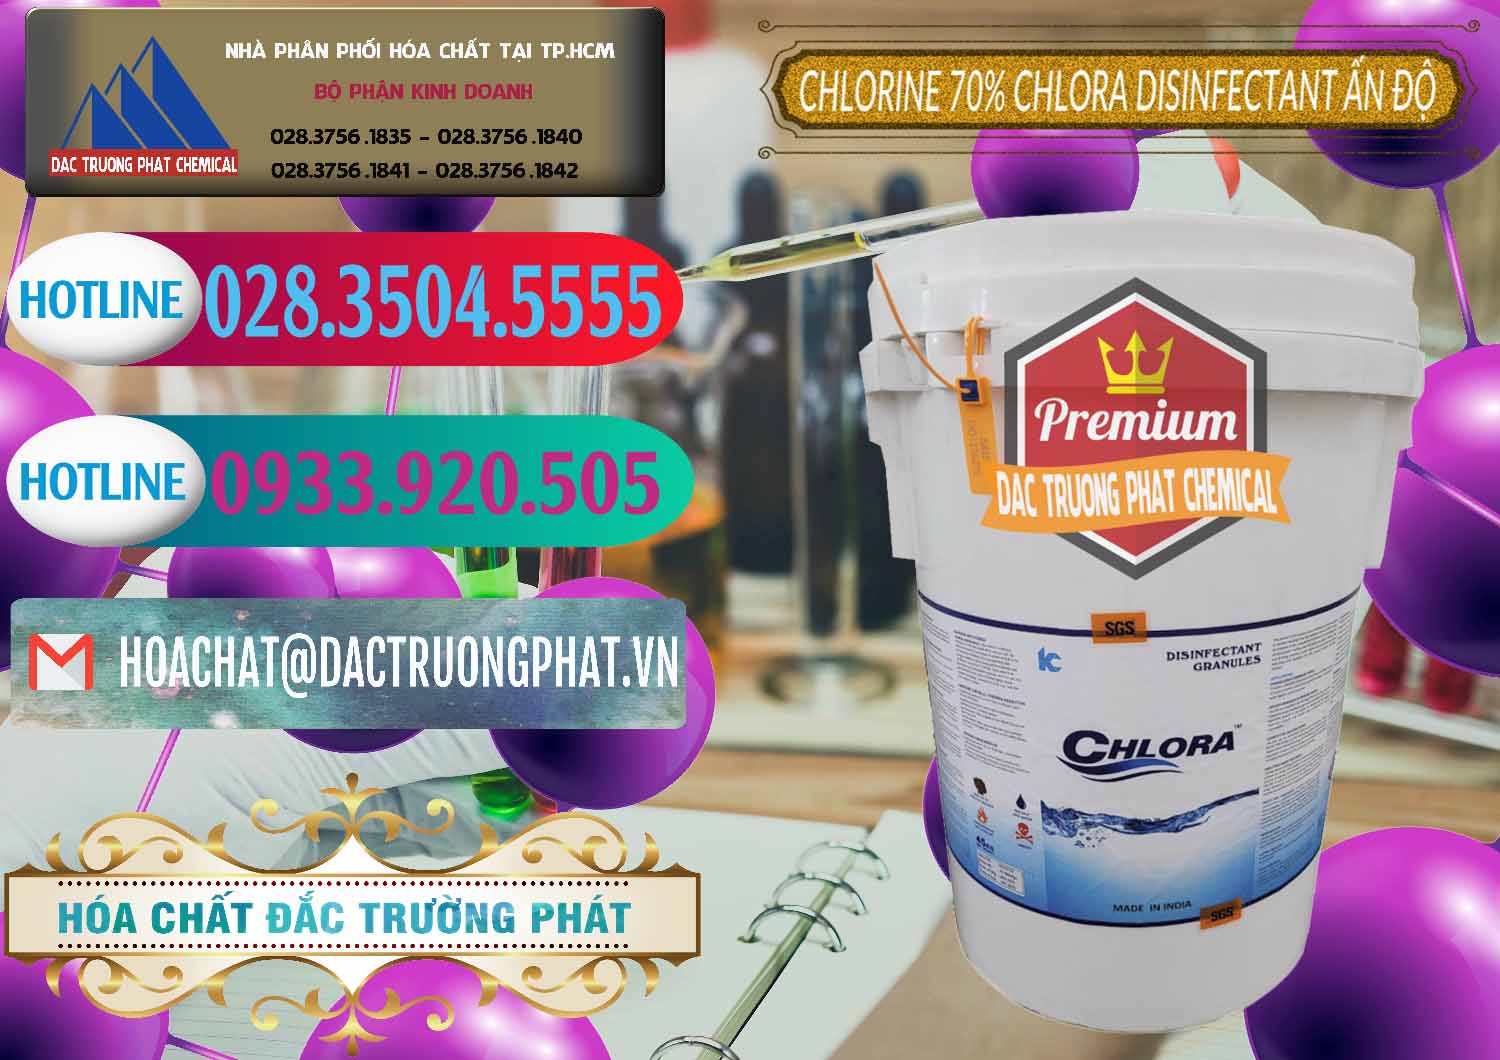 Công ty chuyên cung cấp _ bán Chlorine – Clorin 70% Chlora Disinfectant Ấn Độ India - 0213 - Công ty chuyên cung cấp _ kinh doanh hóa chất tại TP.HCM - truongphat.vn